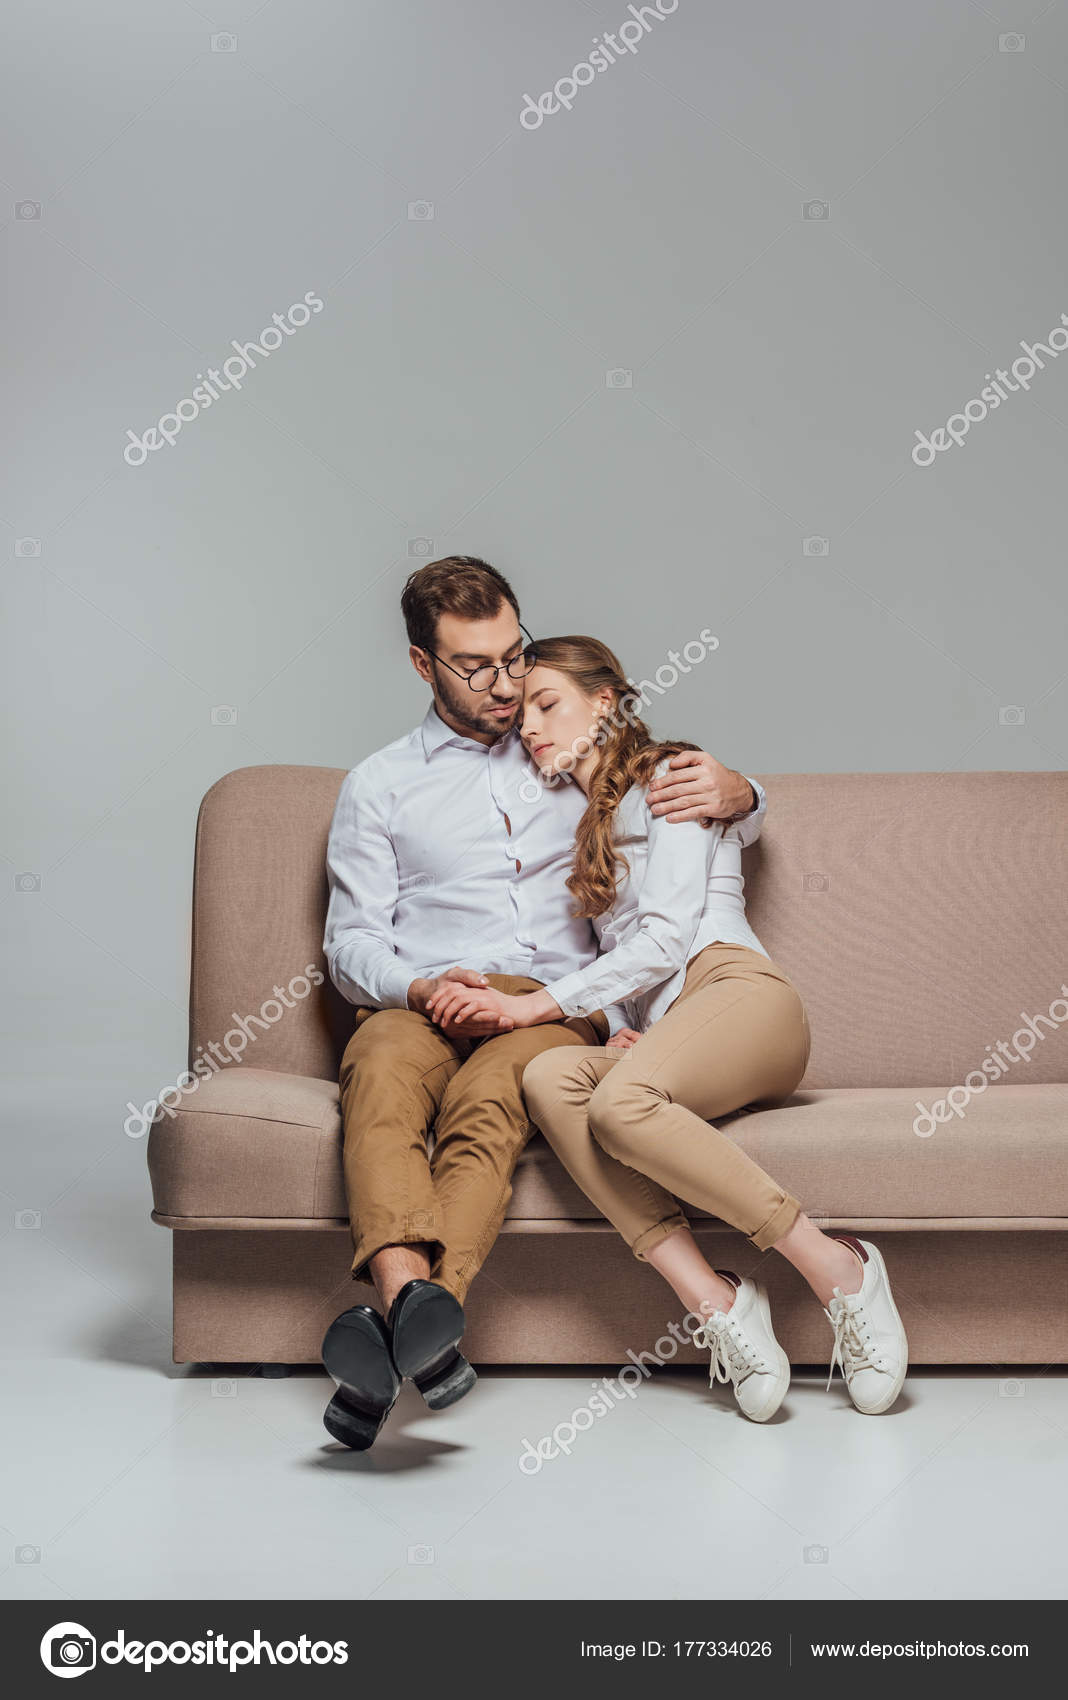 Парень сидит на плечах парня. Человек обнимает сидя. Люди обнимаются сидя. Люди обнимаются на диване. Девушка сидит на диване.